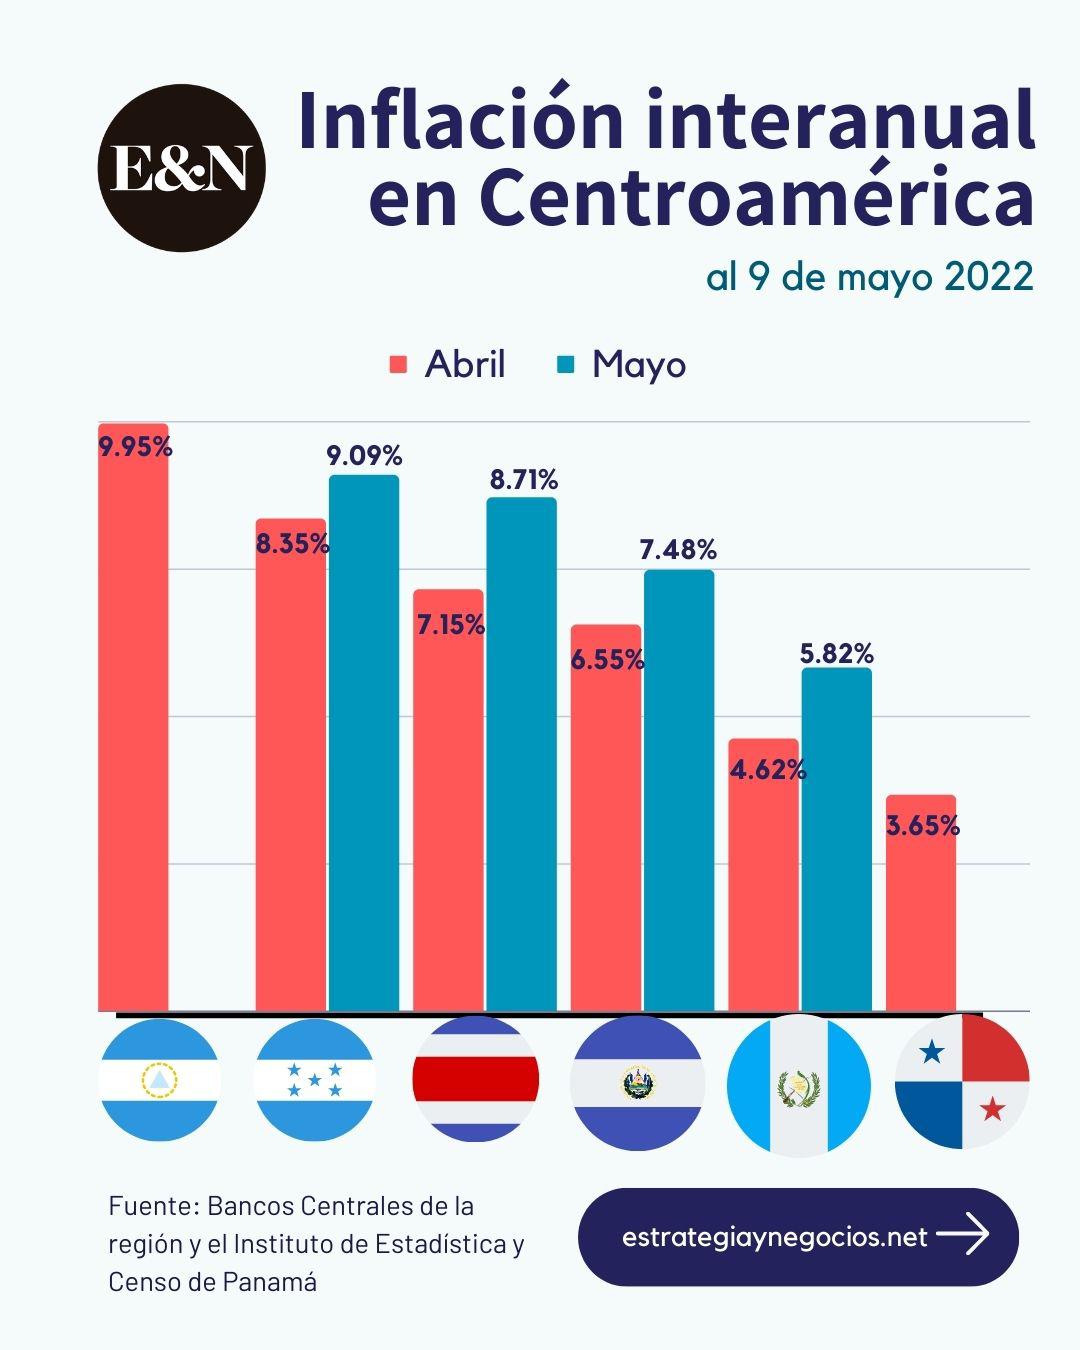 Crisis inflacionaria: ¿Cómo se originó? ¿Cómo la enfrenta el empresario de Centroamérica?